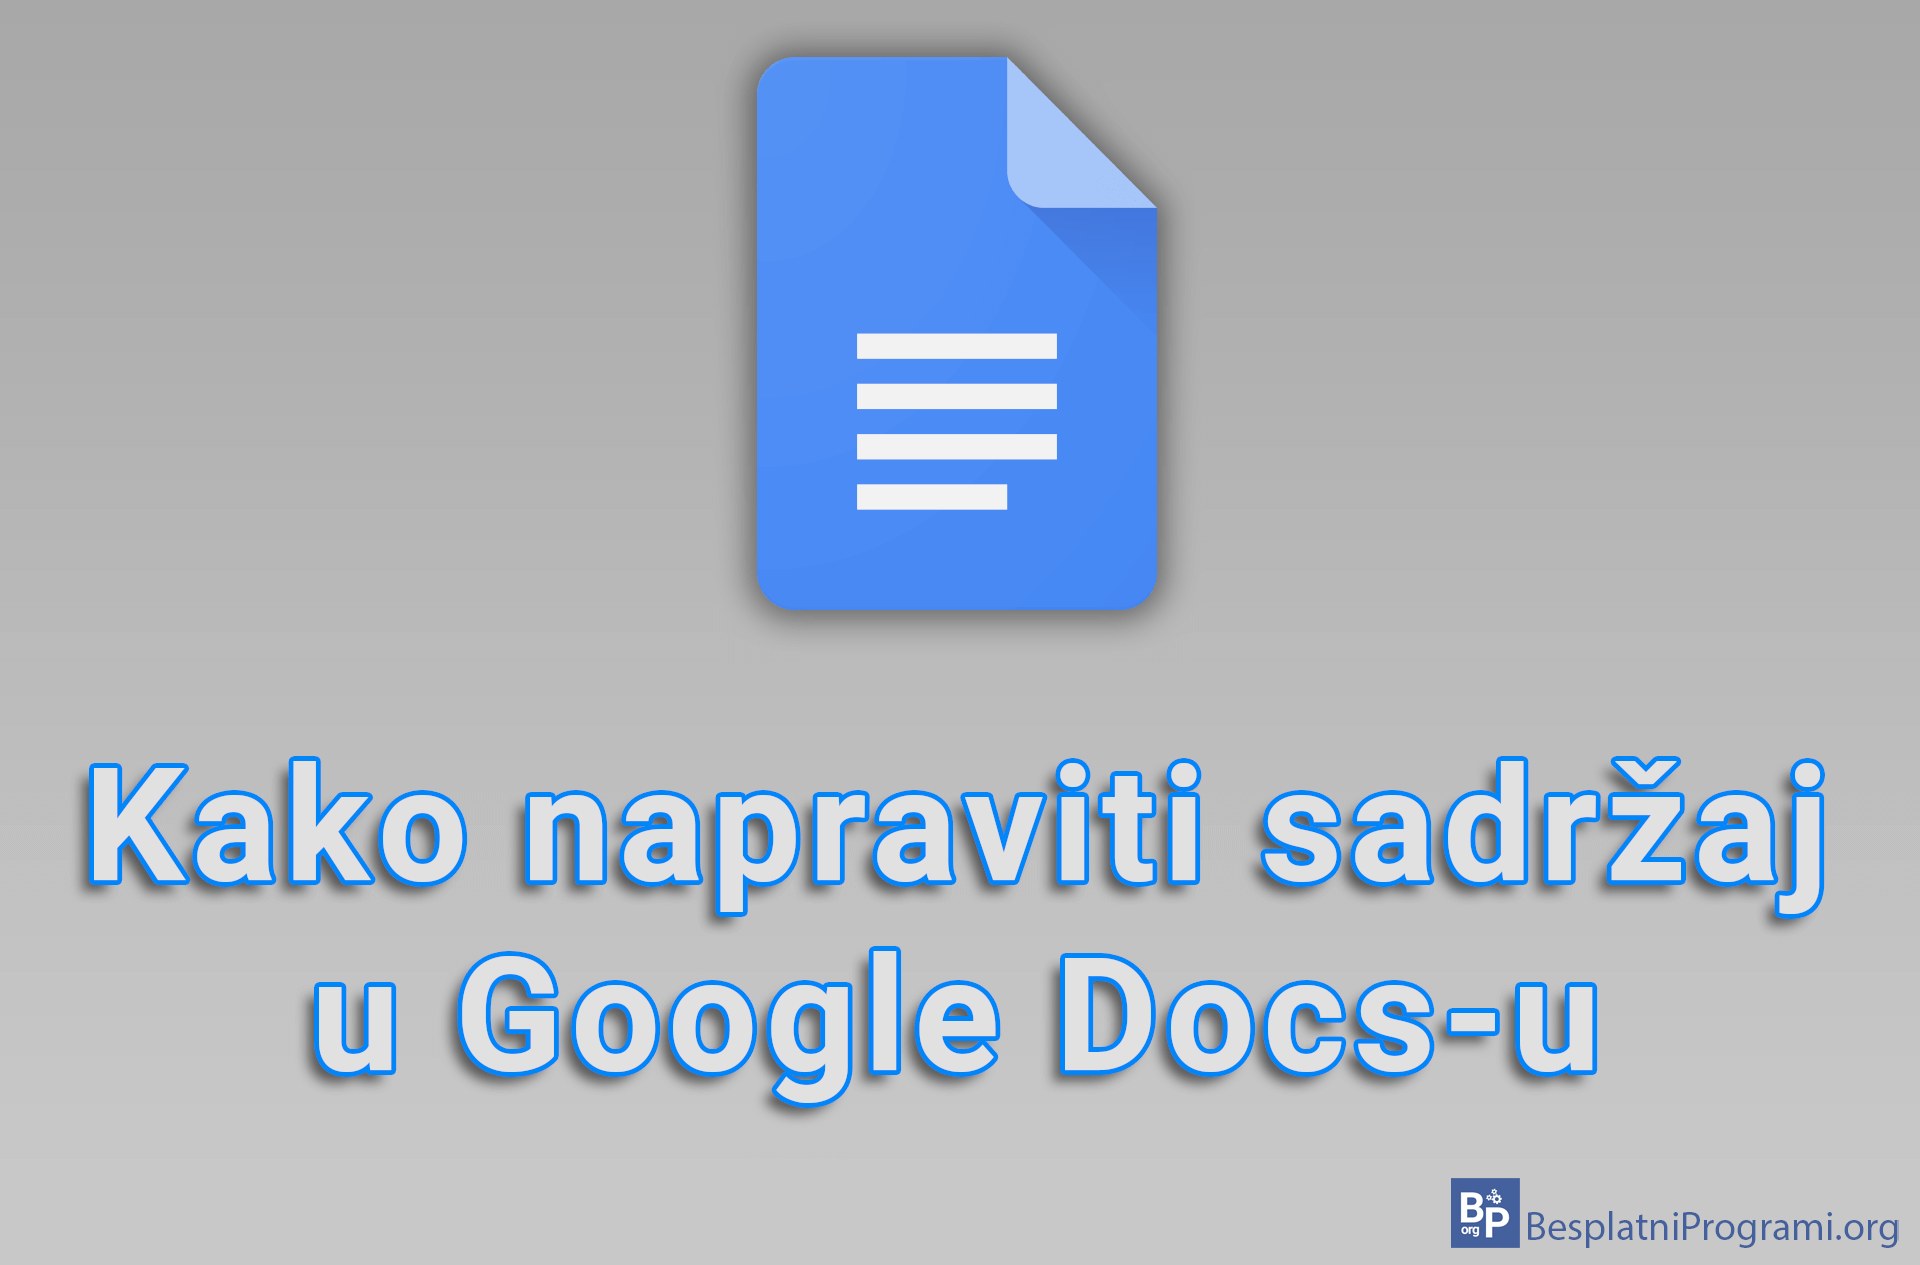 Kako napraviti sadržaj u Google Docs-u